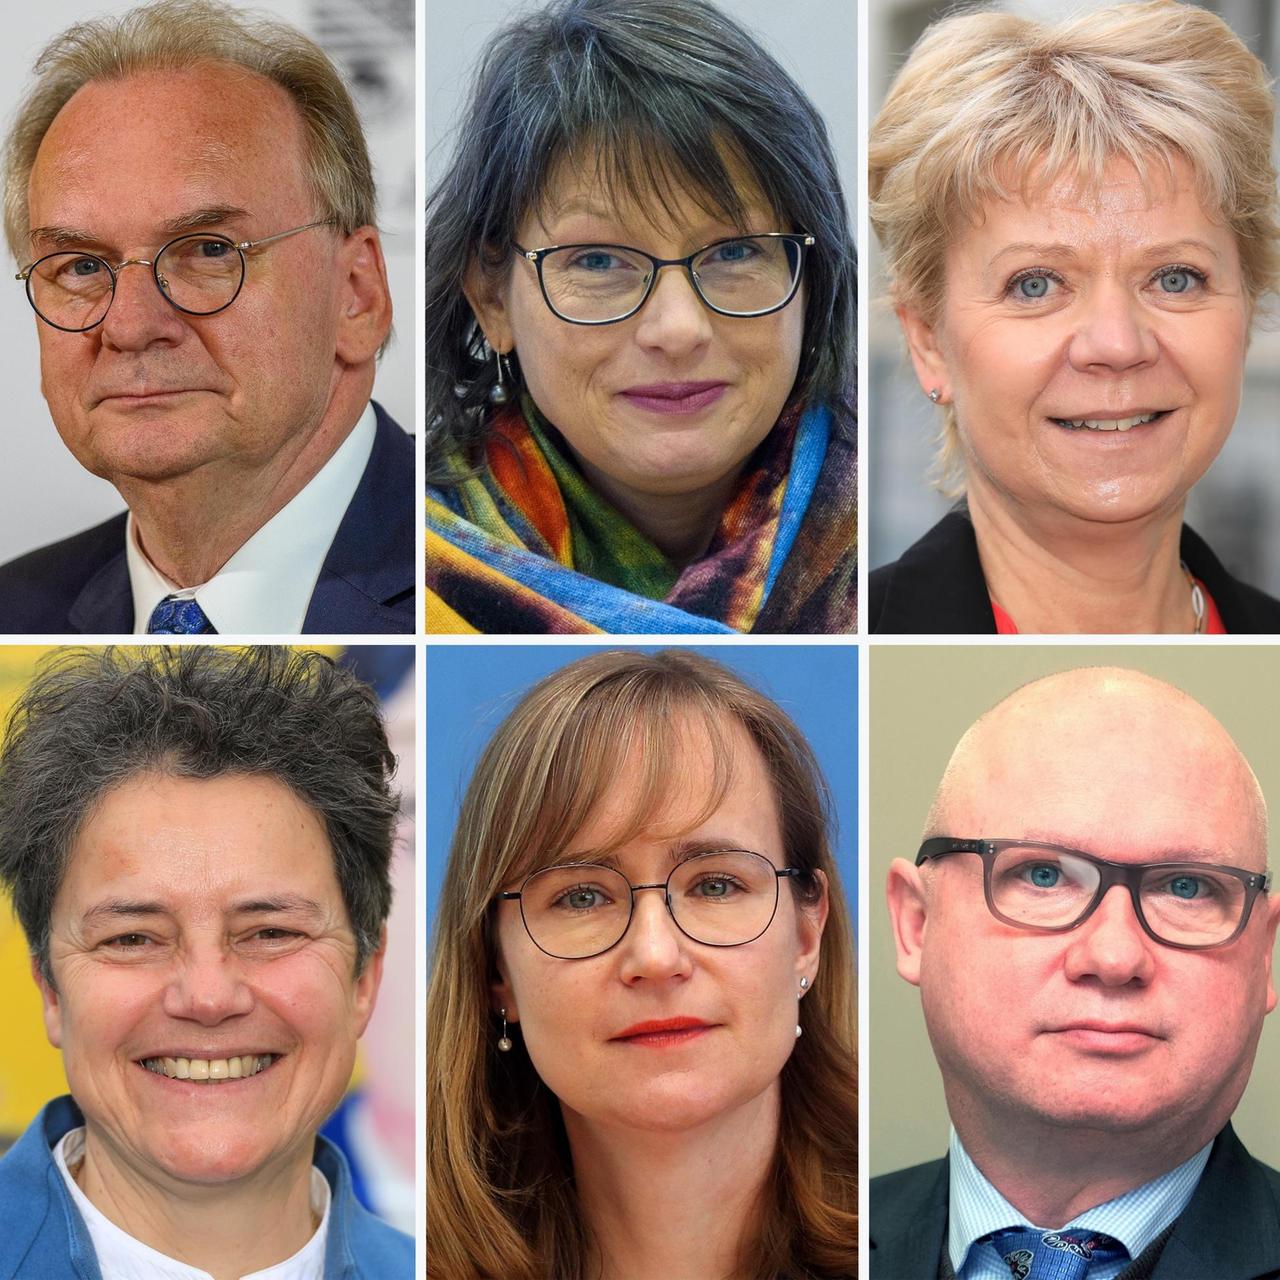 Die Kombo zeigt die Spitzenkandidaten der aussichtsreichsten Parteien für die Landtagswahl in Sachsen-Anhalt am 06. Juni 2021: Reiner Haseloff (CDU, o. l-r), Ministerpräsident des Landes Sachsen-Anhalt, Katja Pähle (SPD), Cornelia Lüddemann (Grüne), Lydia Hüskens (FDP, u. l-r), Eva von Angern (Linke) und Oliver Kirchner (AfD).